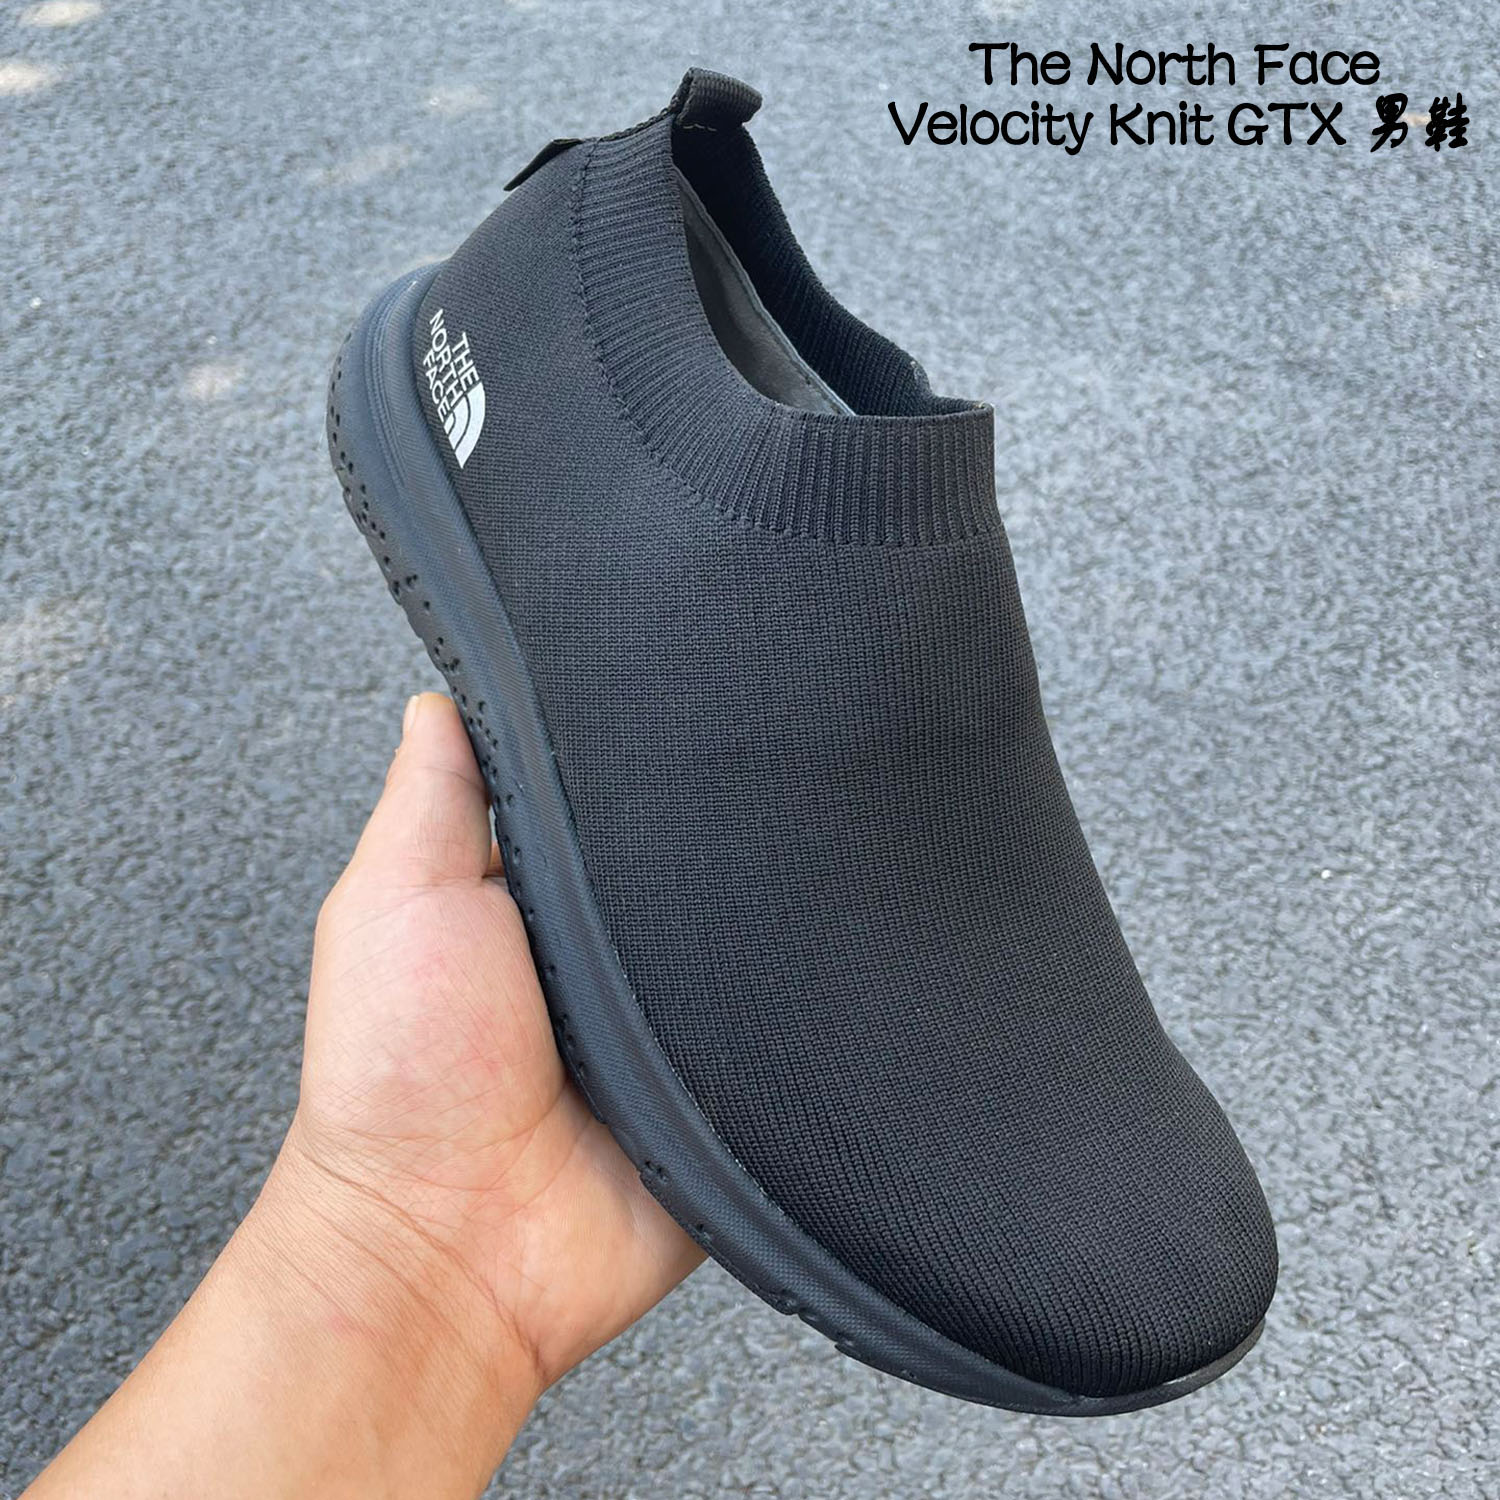 The North Face Velocity Knit GORE-GTX 套腳款襪子鞋防水鞋休閒鞋低筒